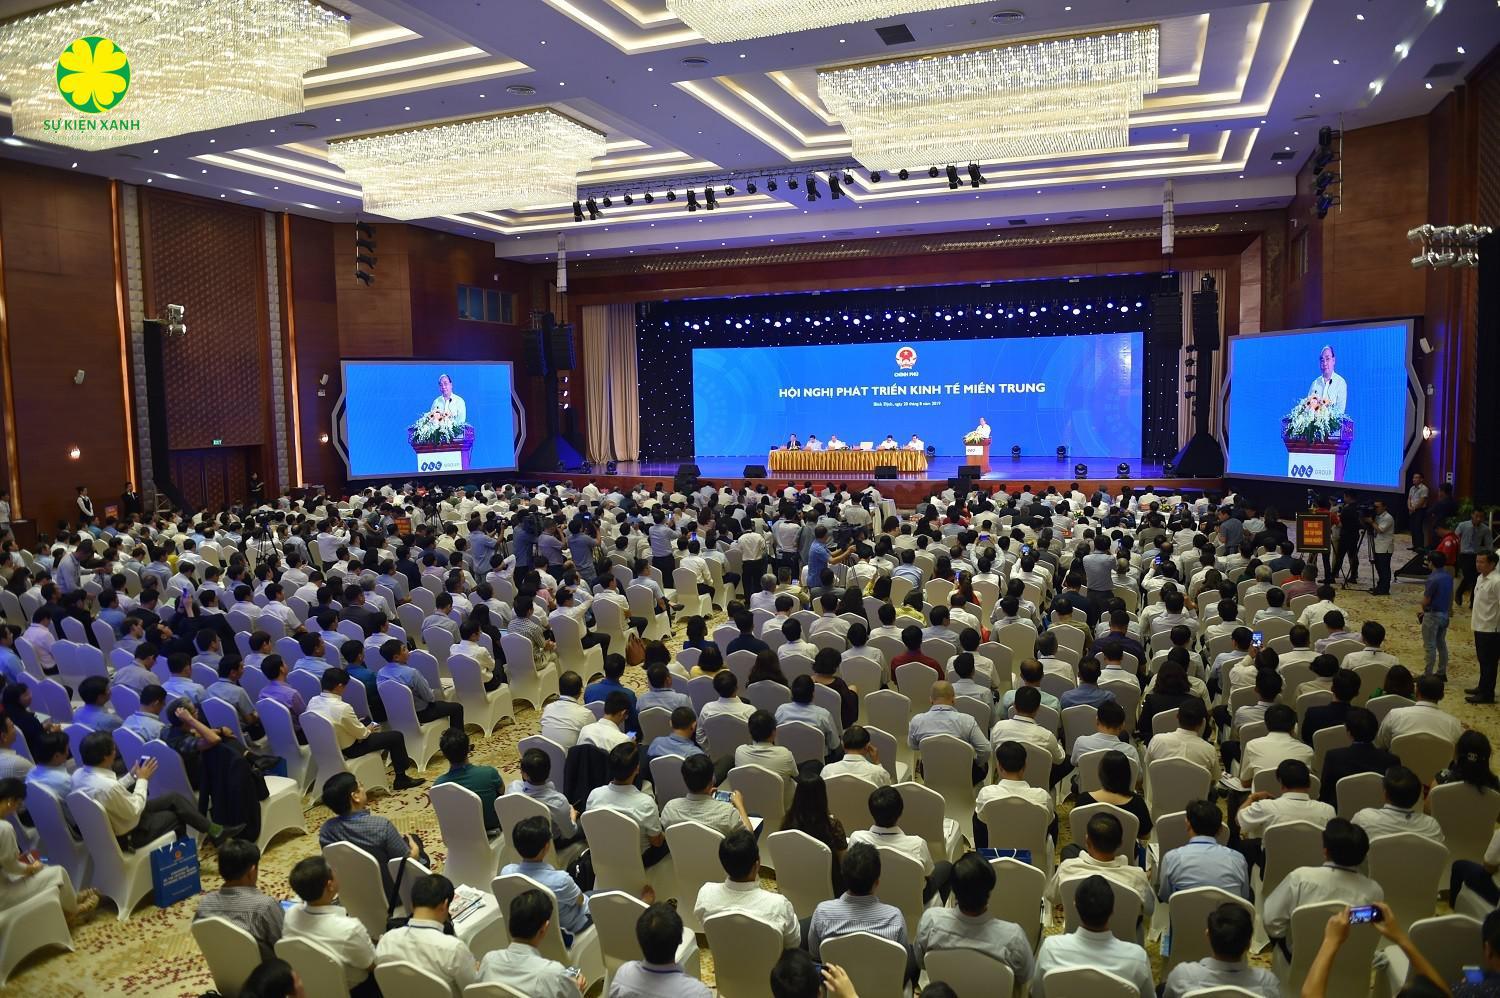 Dịch vụ tổ chức Hội thảo hội nghị tại Ninh Bình giá rẻ